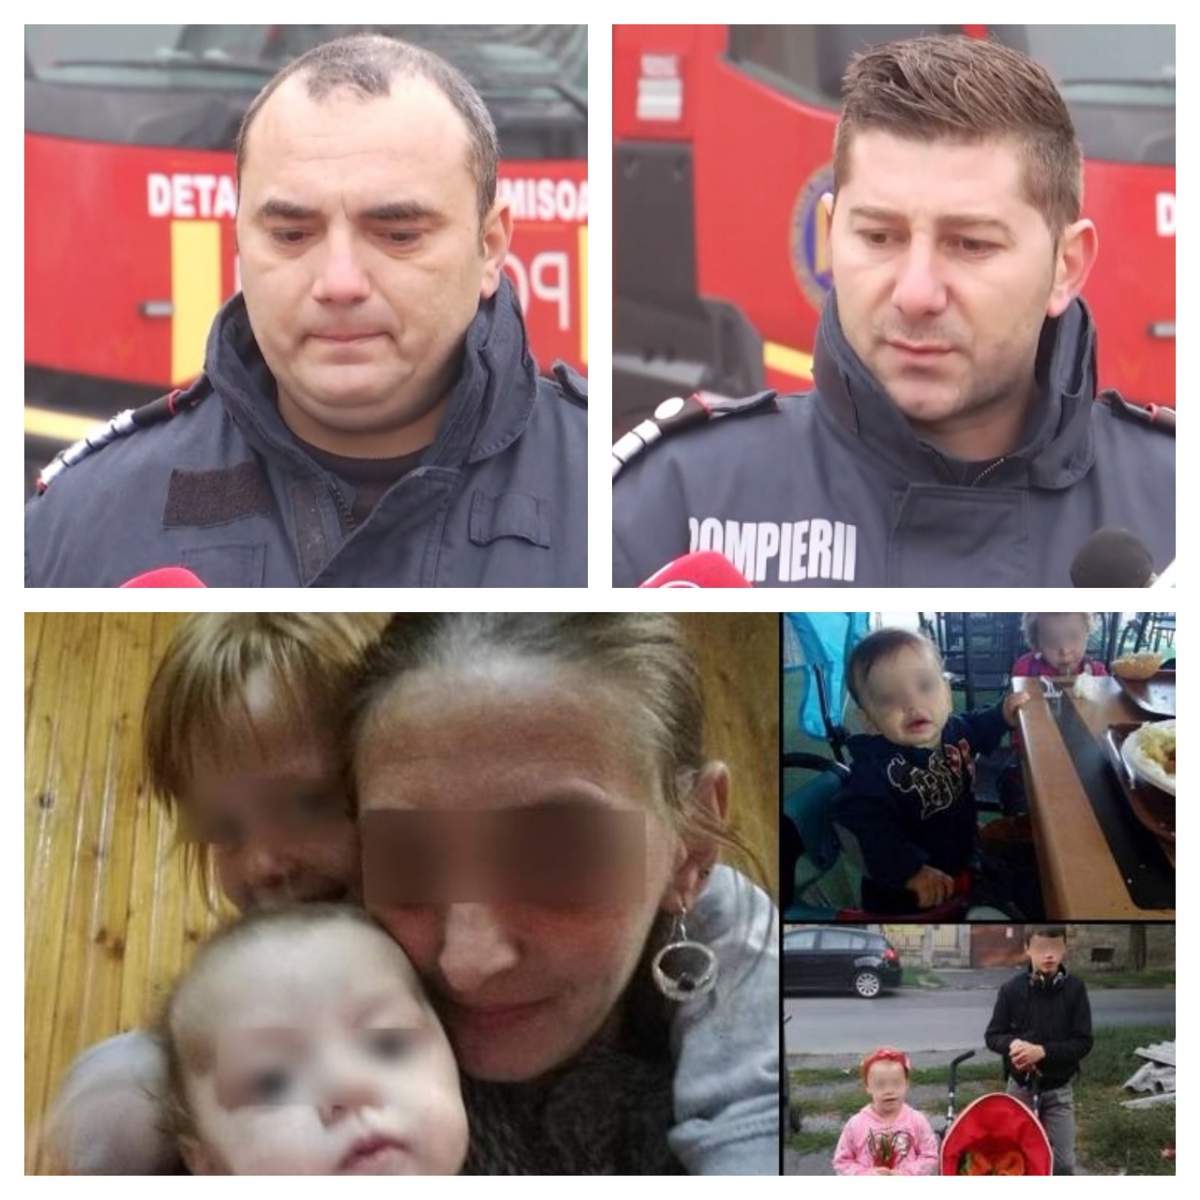 Pompierii care i-au găsit pe cei patru fraţi arşi în casă, la Timişoara, mărturii tulburătoare: "Speram să-i găsim în viaţă" / VIDEO